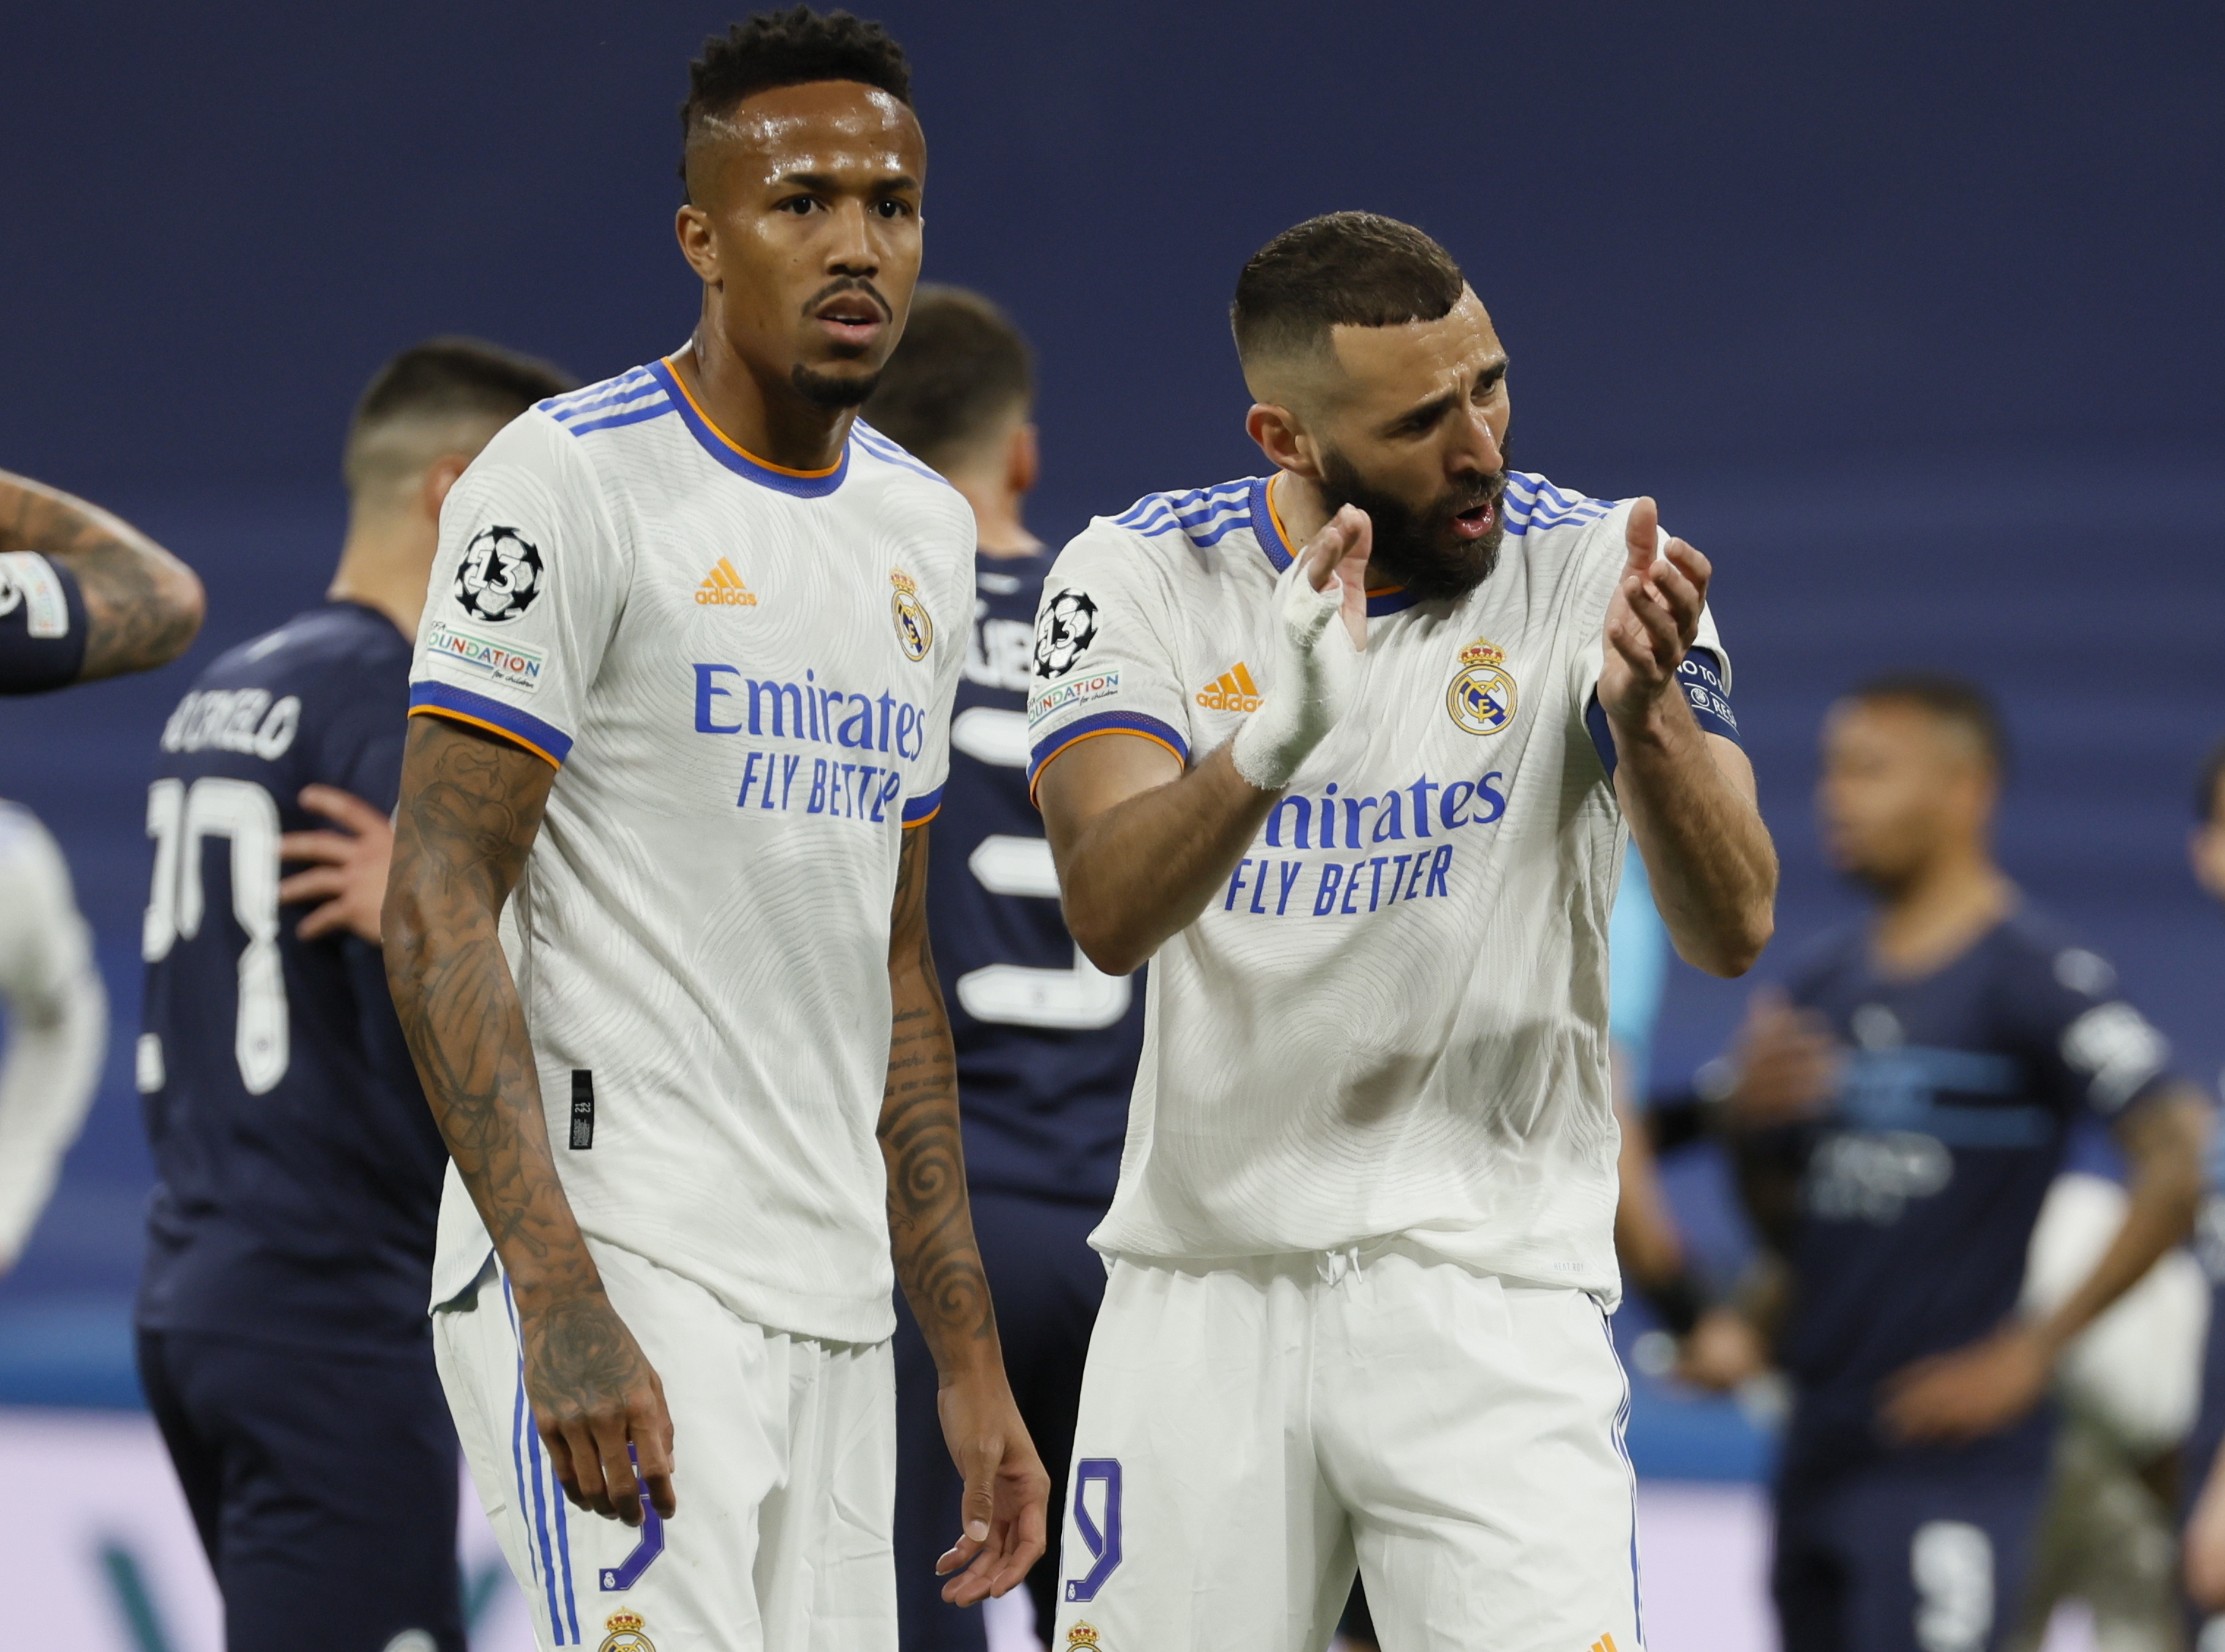 Real Madrid e Milan tentam segurar vantagens e confirmar passagem às meias- finais da Champions - Liga dos Campeões - SAPO Desporto